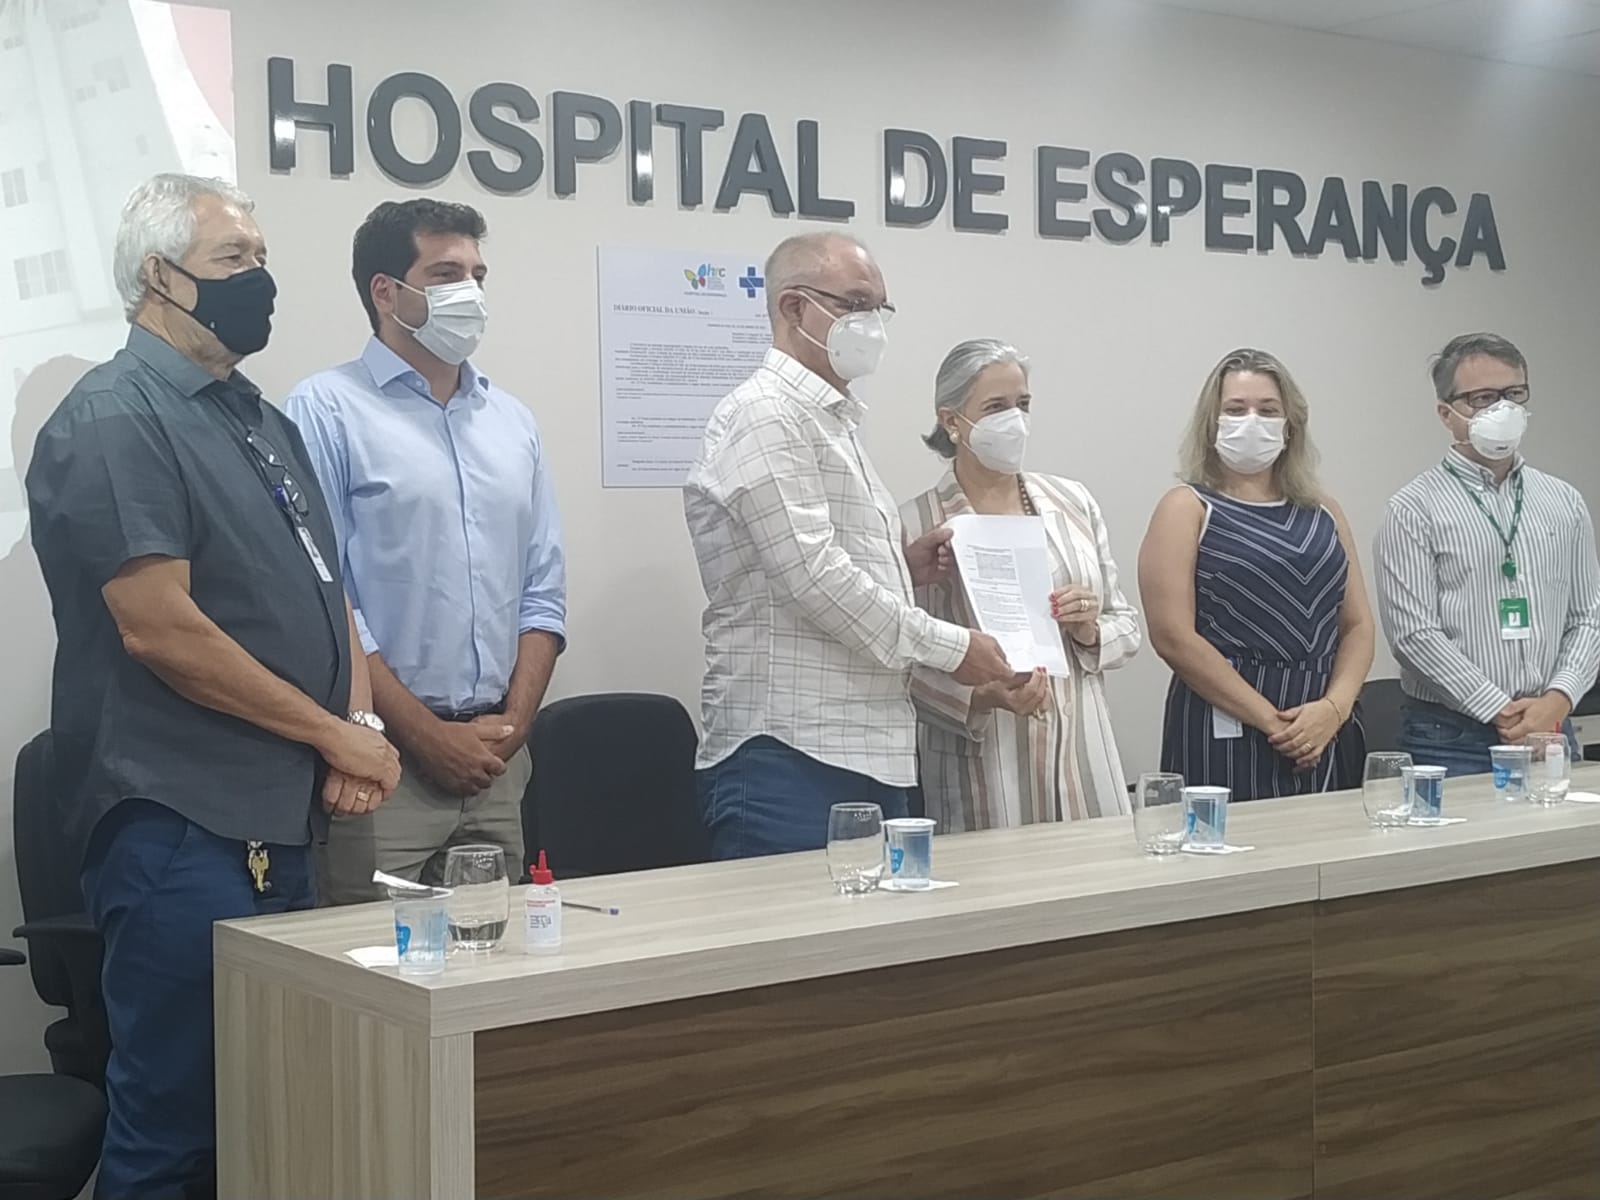 Unimed Prudente e Hospital de Esperança firmam parceria